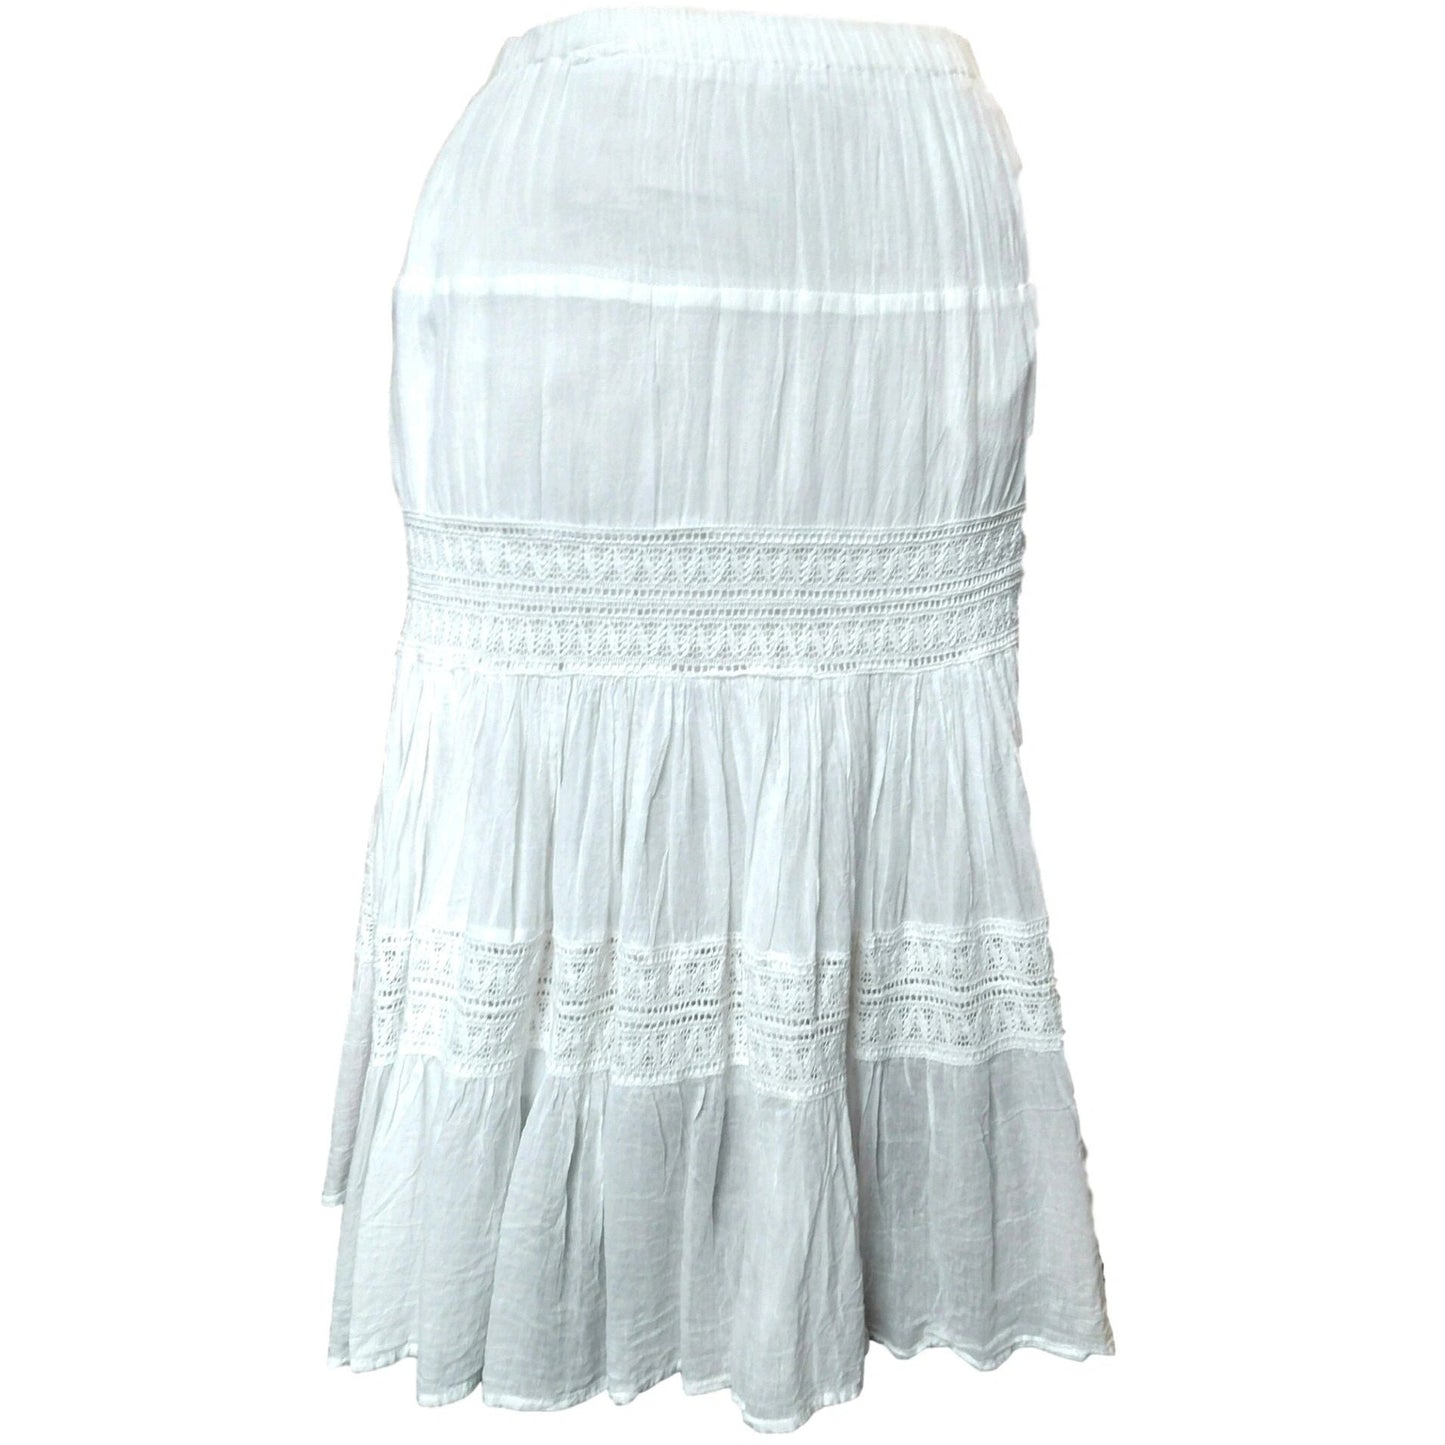 Adini White Cotton Crinkle Skirt with Crochet Insert